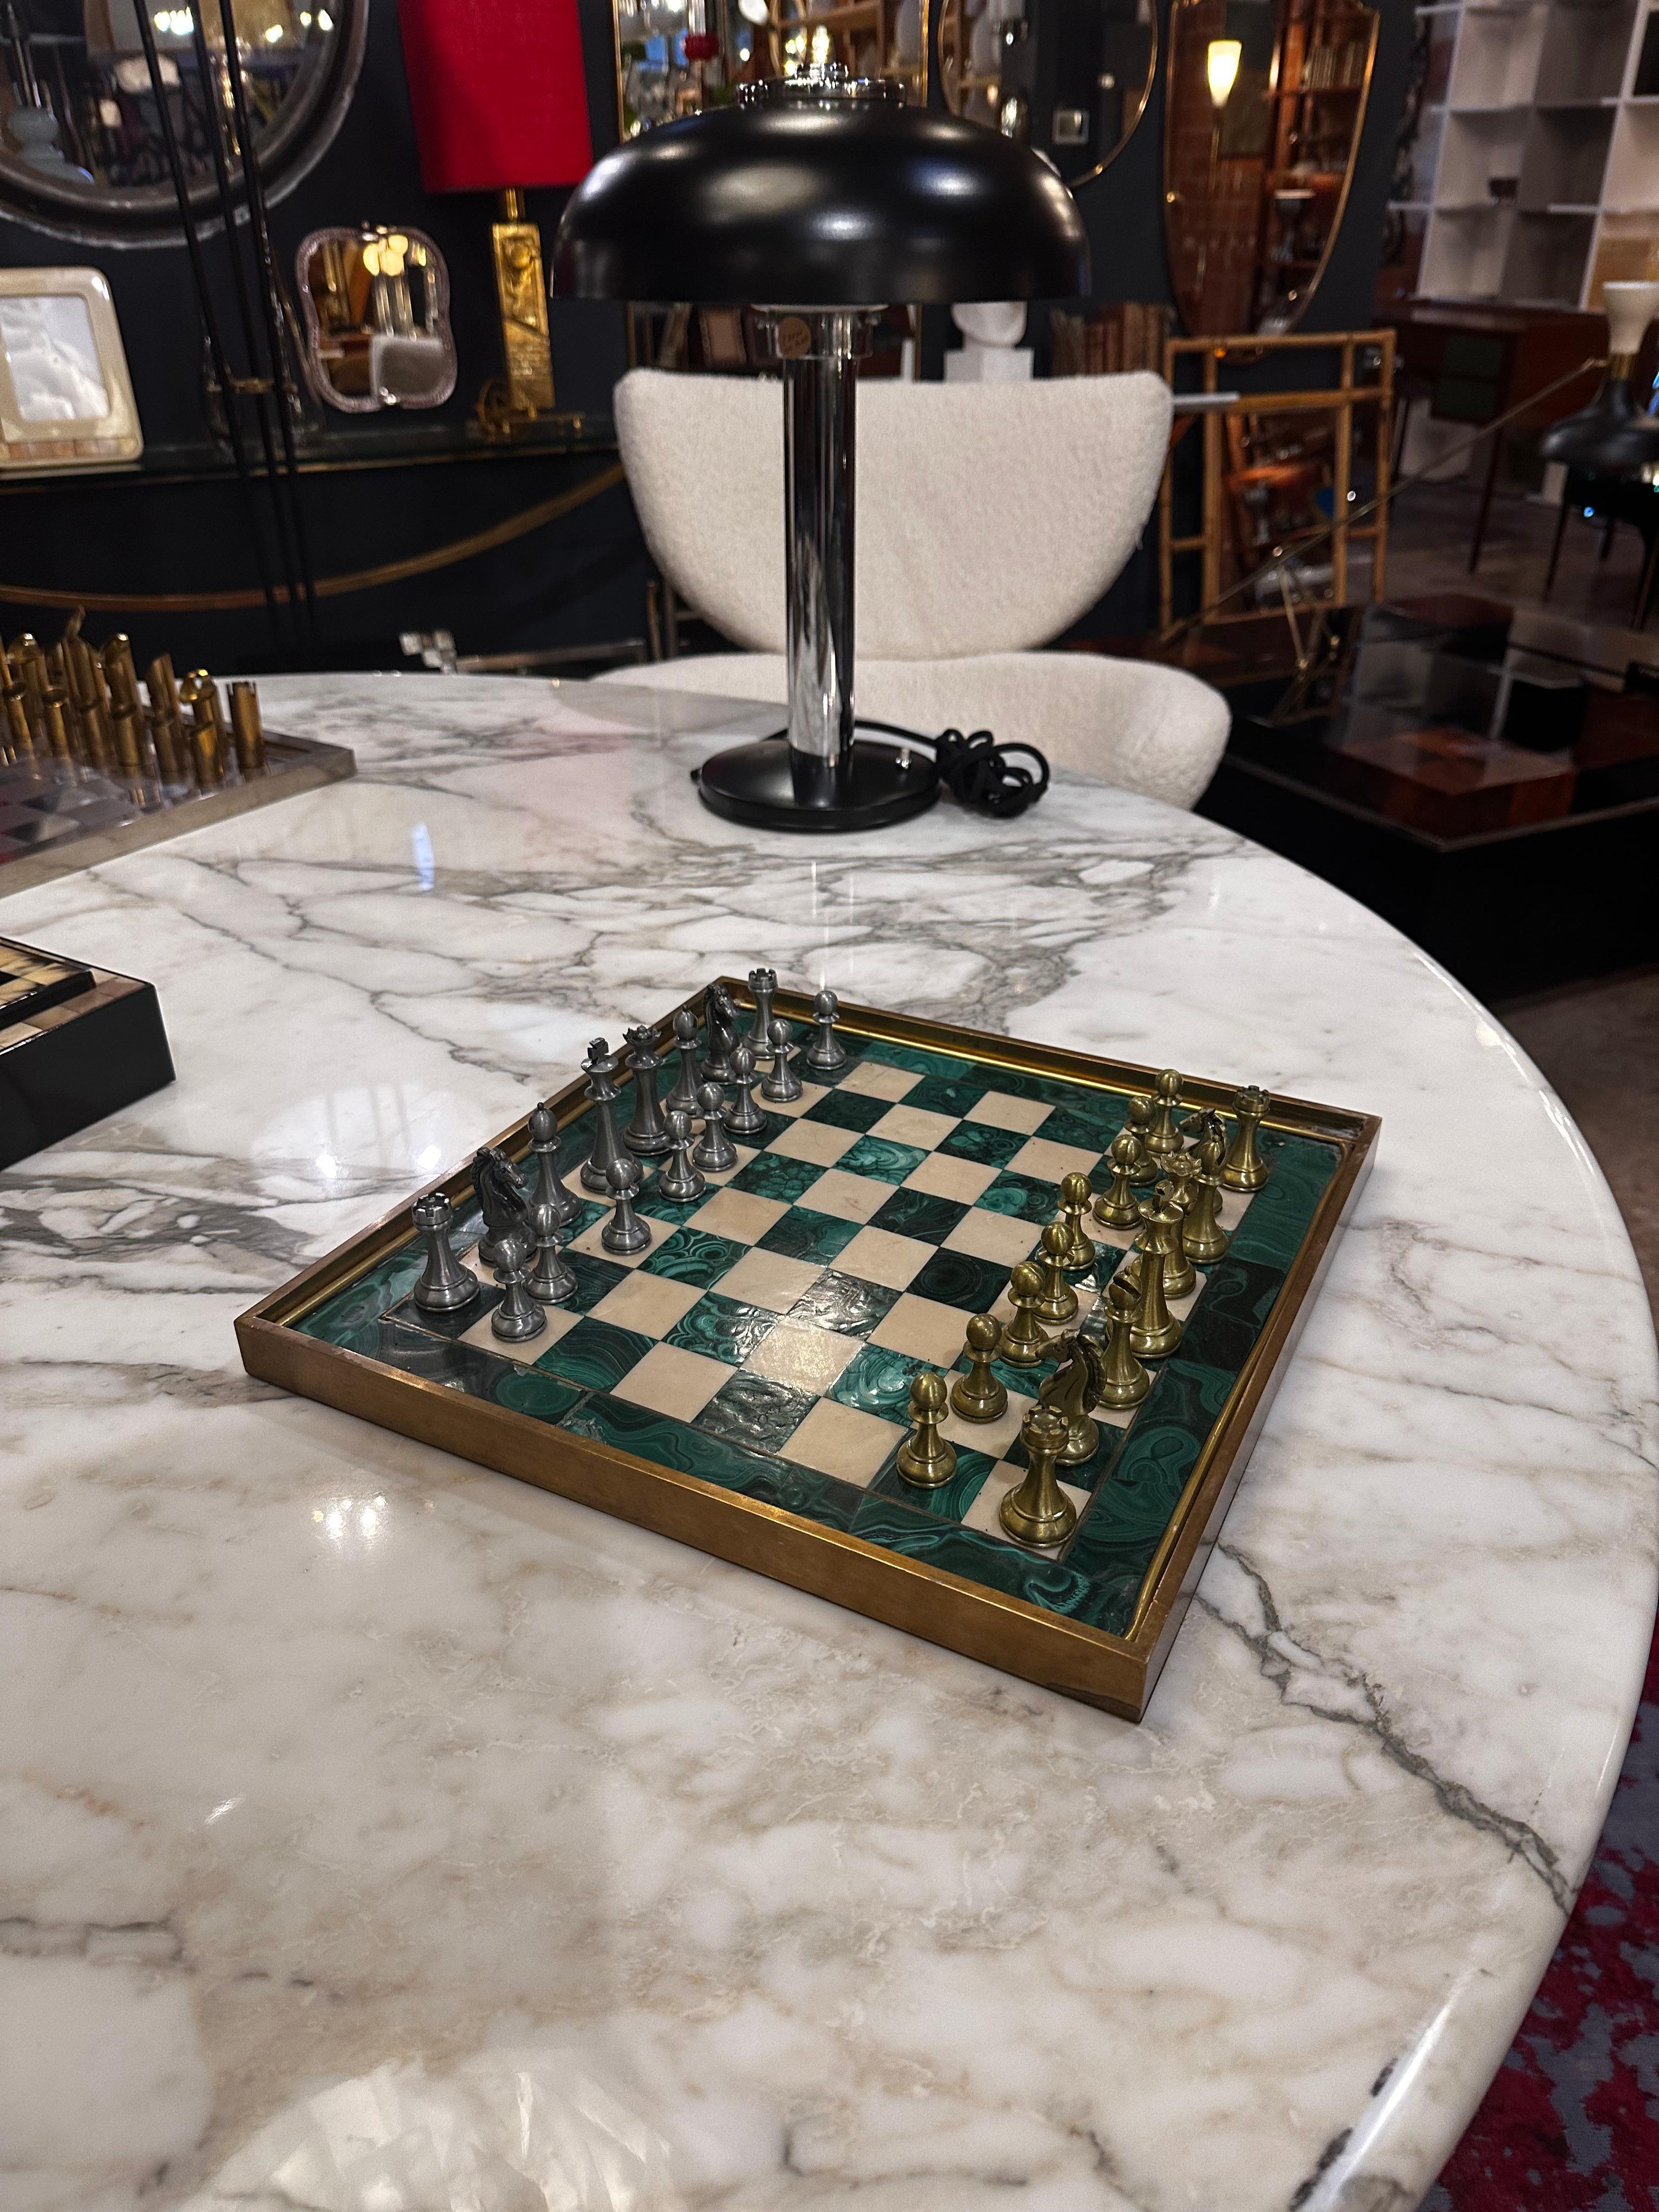 Le grand jeu d'échecs italien vintage en malachite des années 1960 est un chef-d'œuvre d'artisanat captivant. L'échiquier, en malachite luxueuse, arbore une riche teinte verte, tandis que les pièces d'échecs en métal qui l'accompagnent ajoutent une